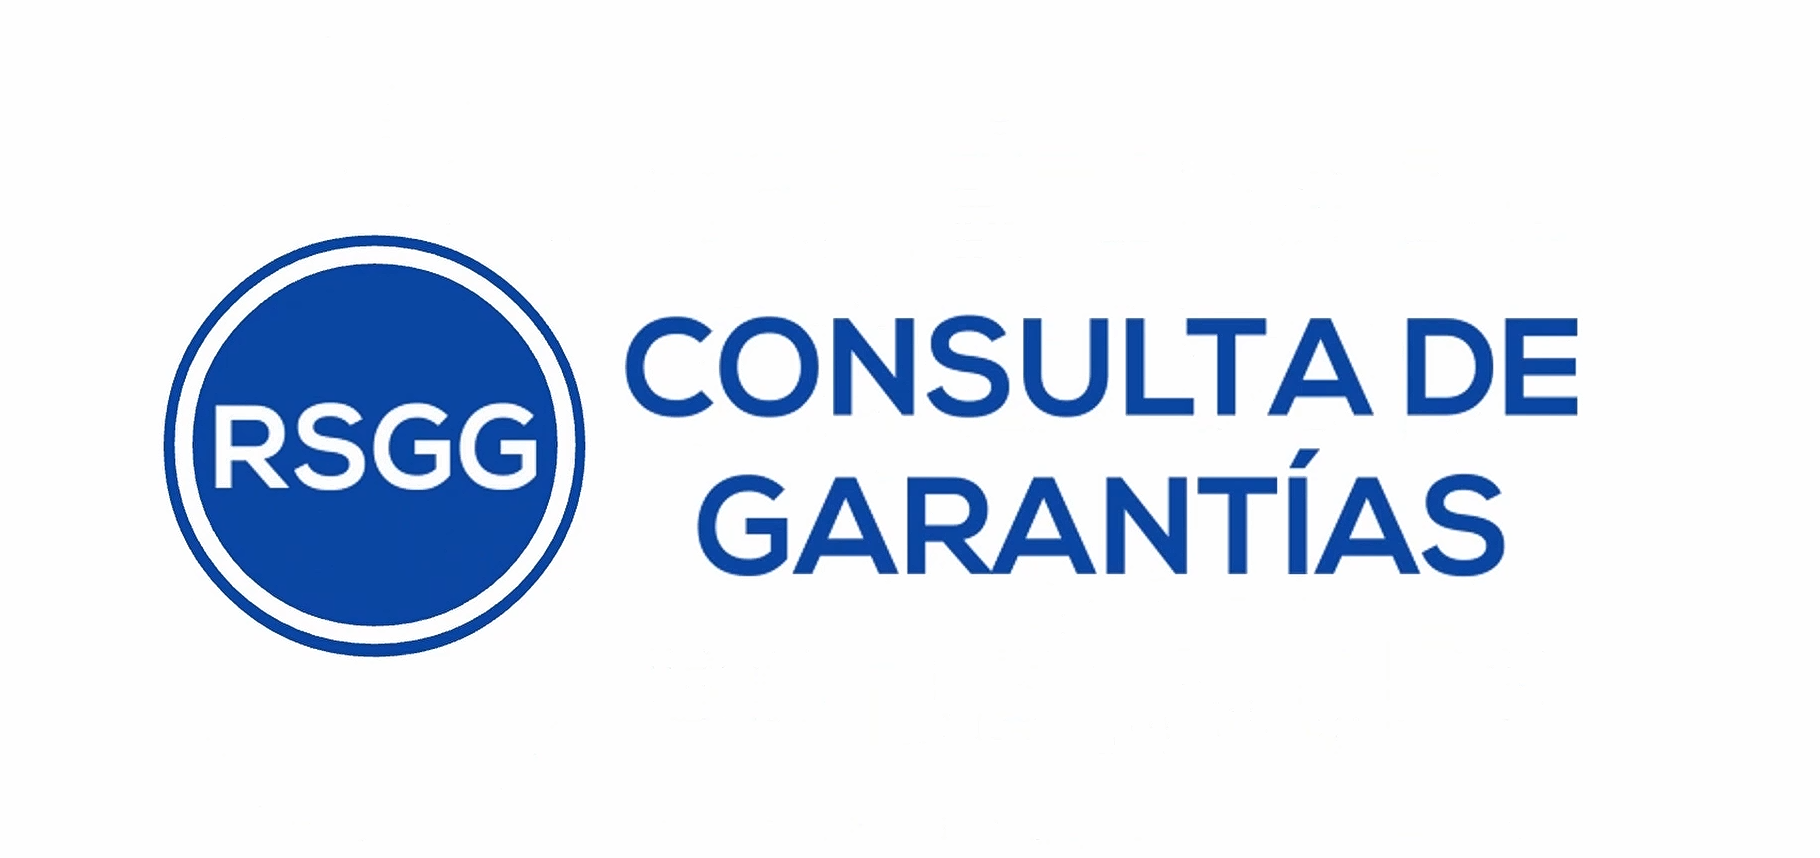 Consultar Garantías - RSGG